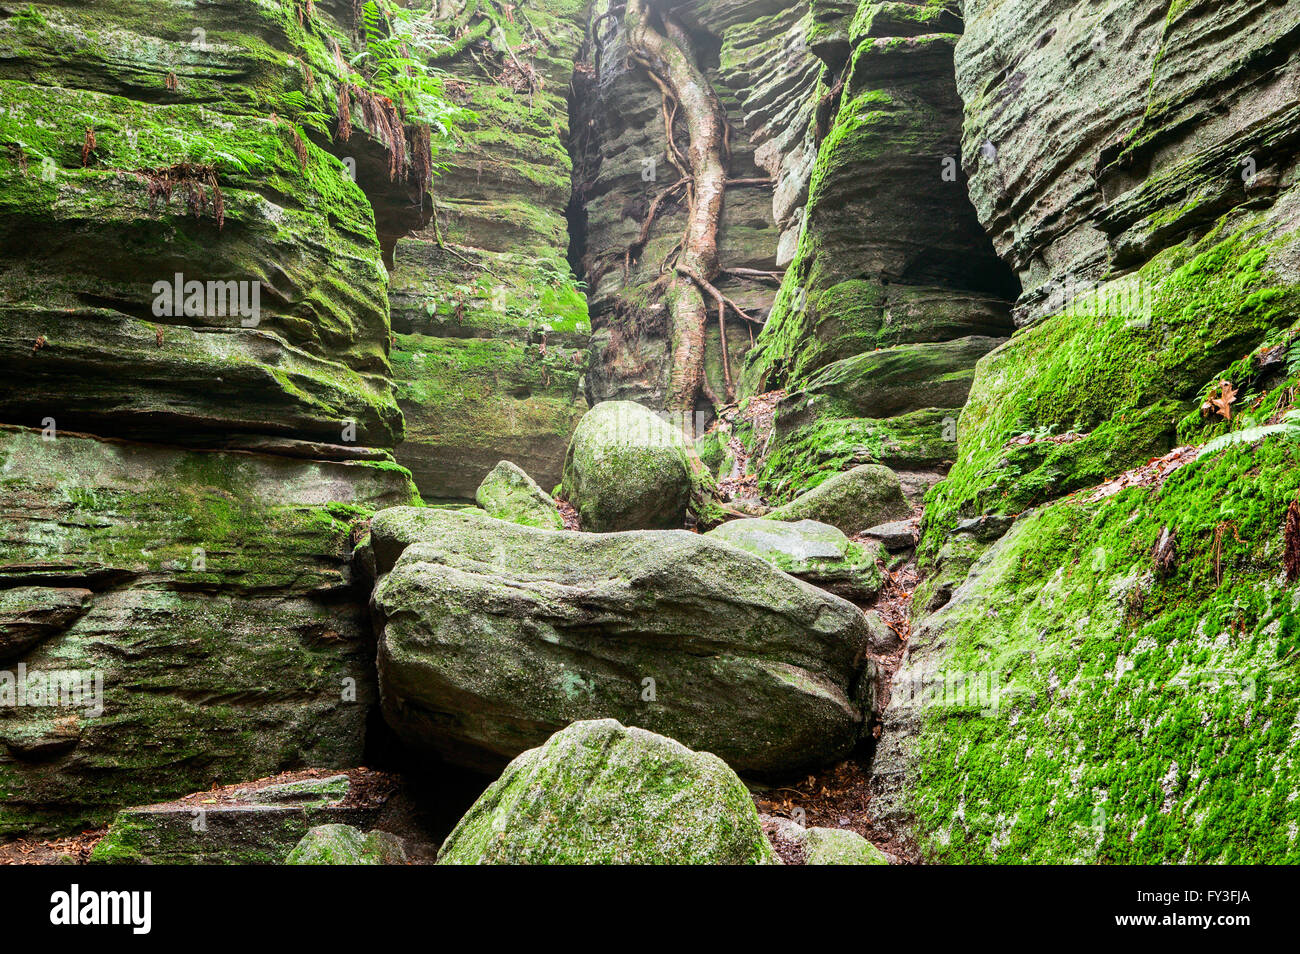 Panama Rocks, Chautauqua County, New York, une ancienne forêt pétrifiée de conglomérat quartz. USA. Banque D'Images